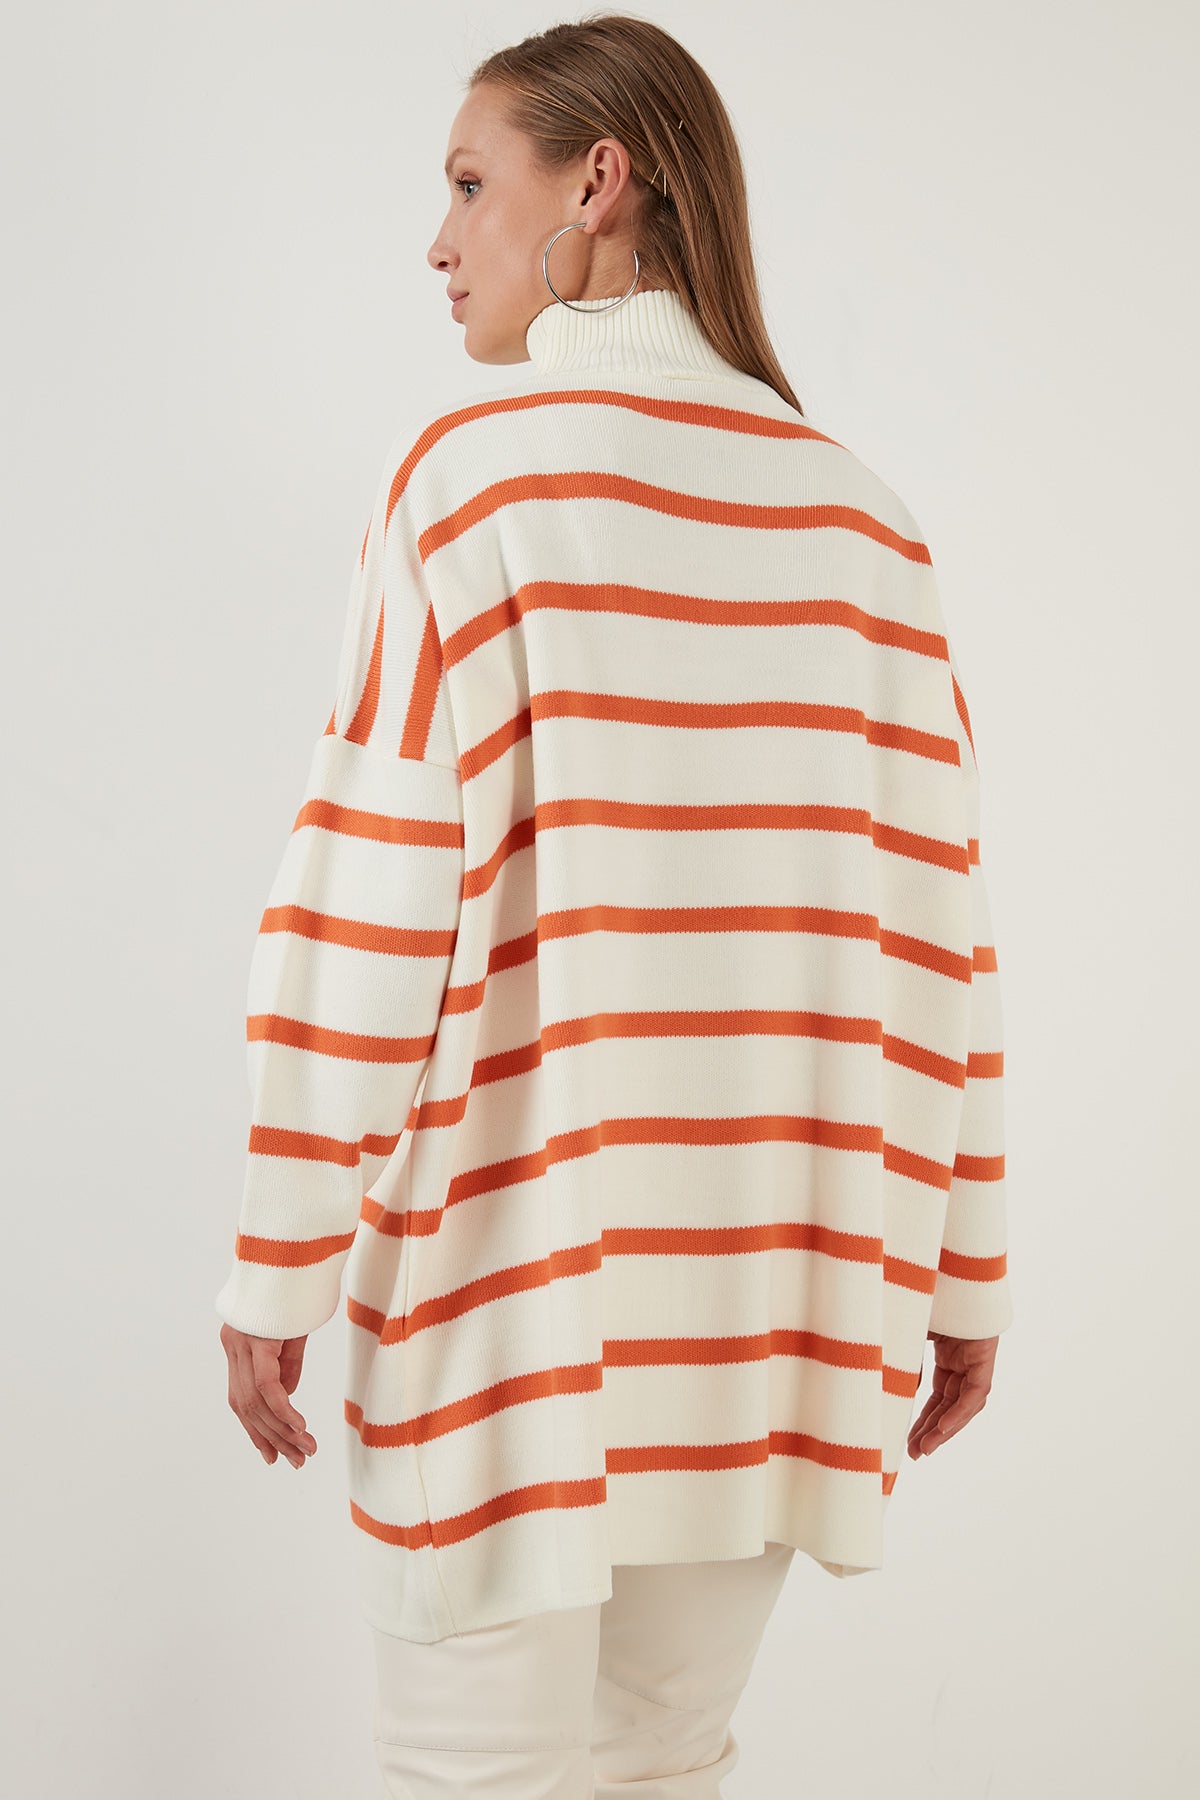 Lela Striped Casual Fit Zippered Standing Collar Long Knitwear Women's Sweater - BONE